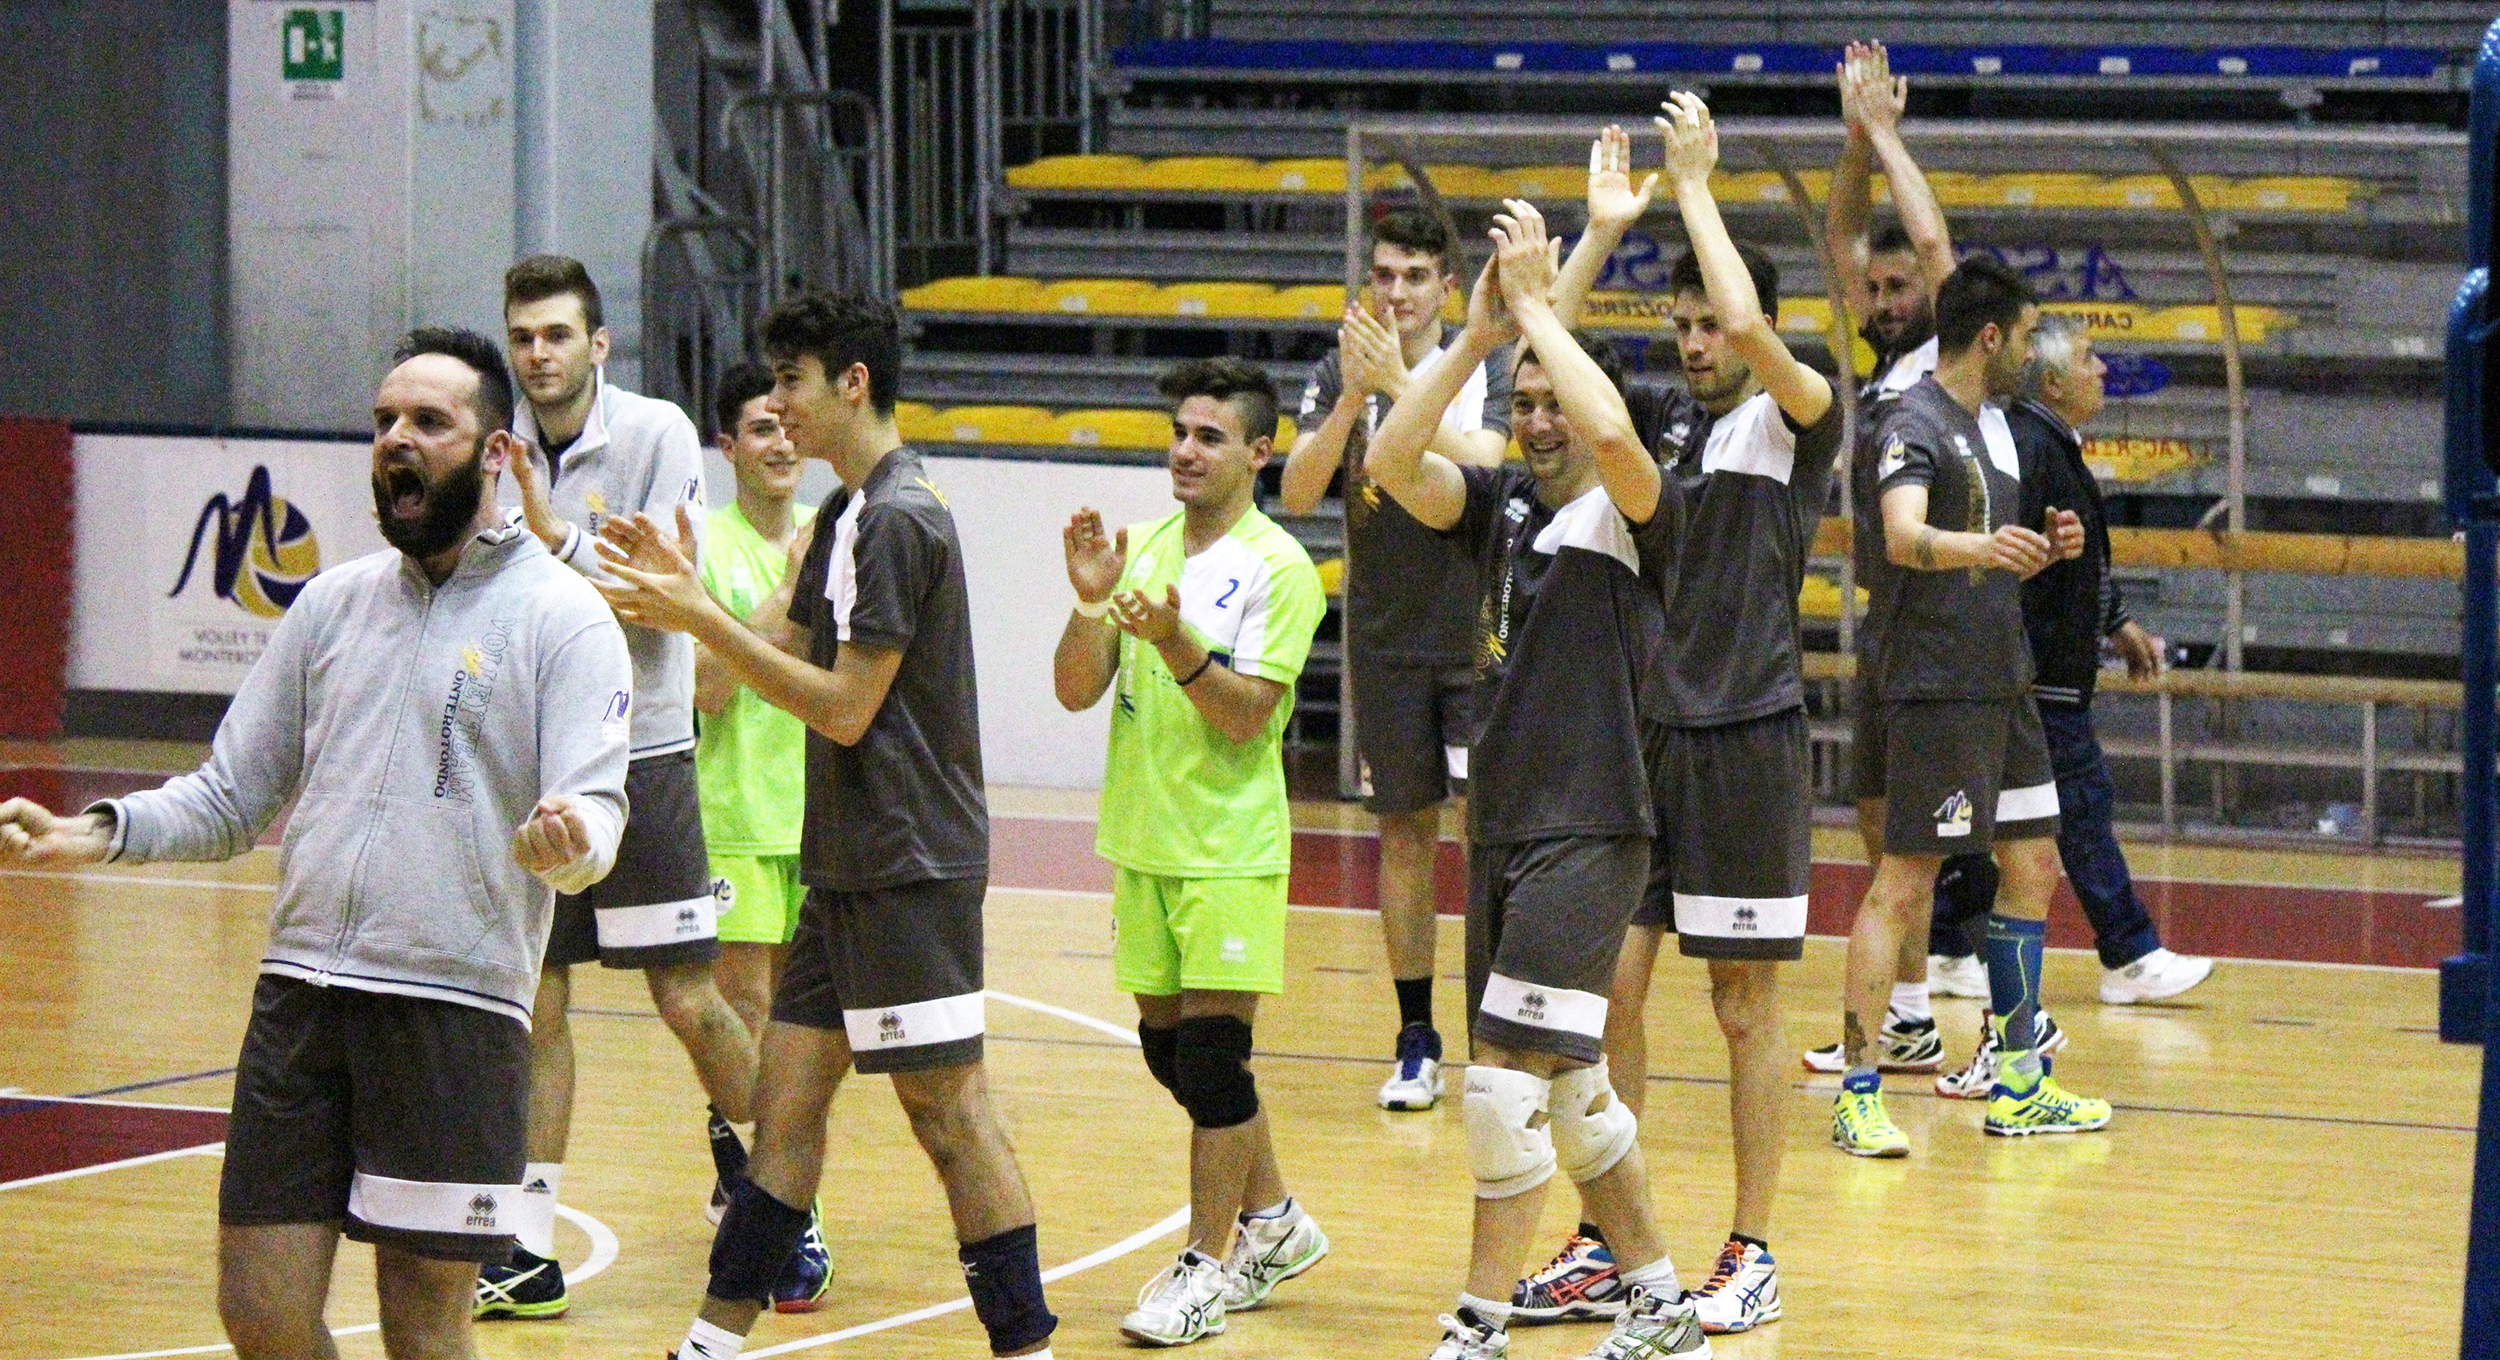 Volley Team Monterotondo promossa in Serie C. Il presidente: “Orgogliosi di rappresentare la nostra città”